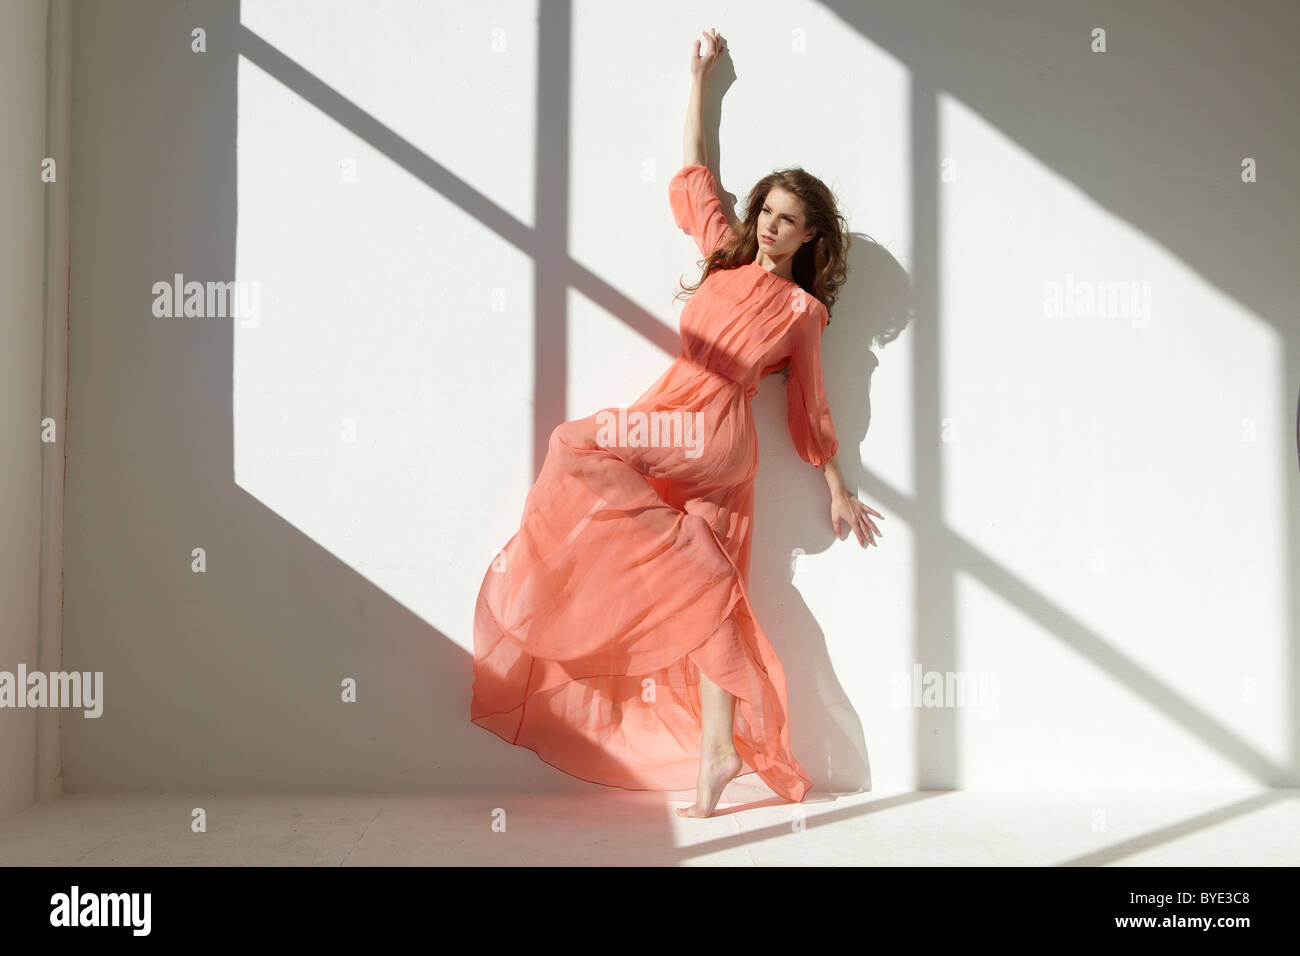 Danseur de Ballet portant une robe rouge appuyé contre un mur dans une danse posent Banque D'Images